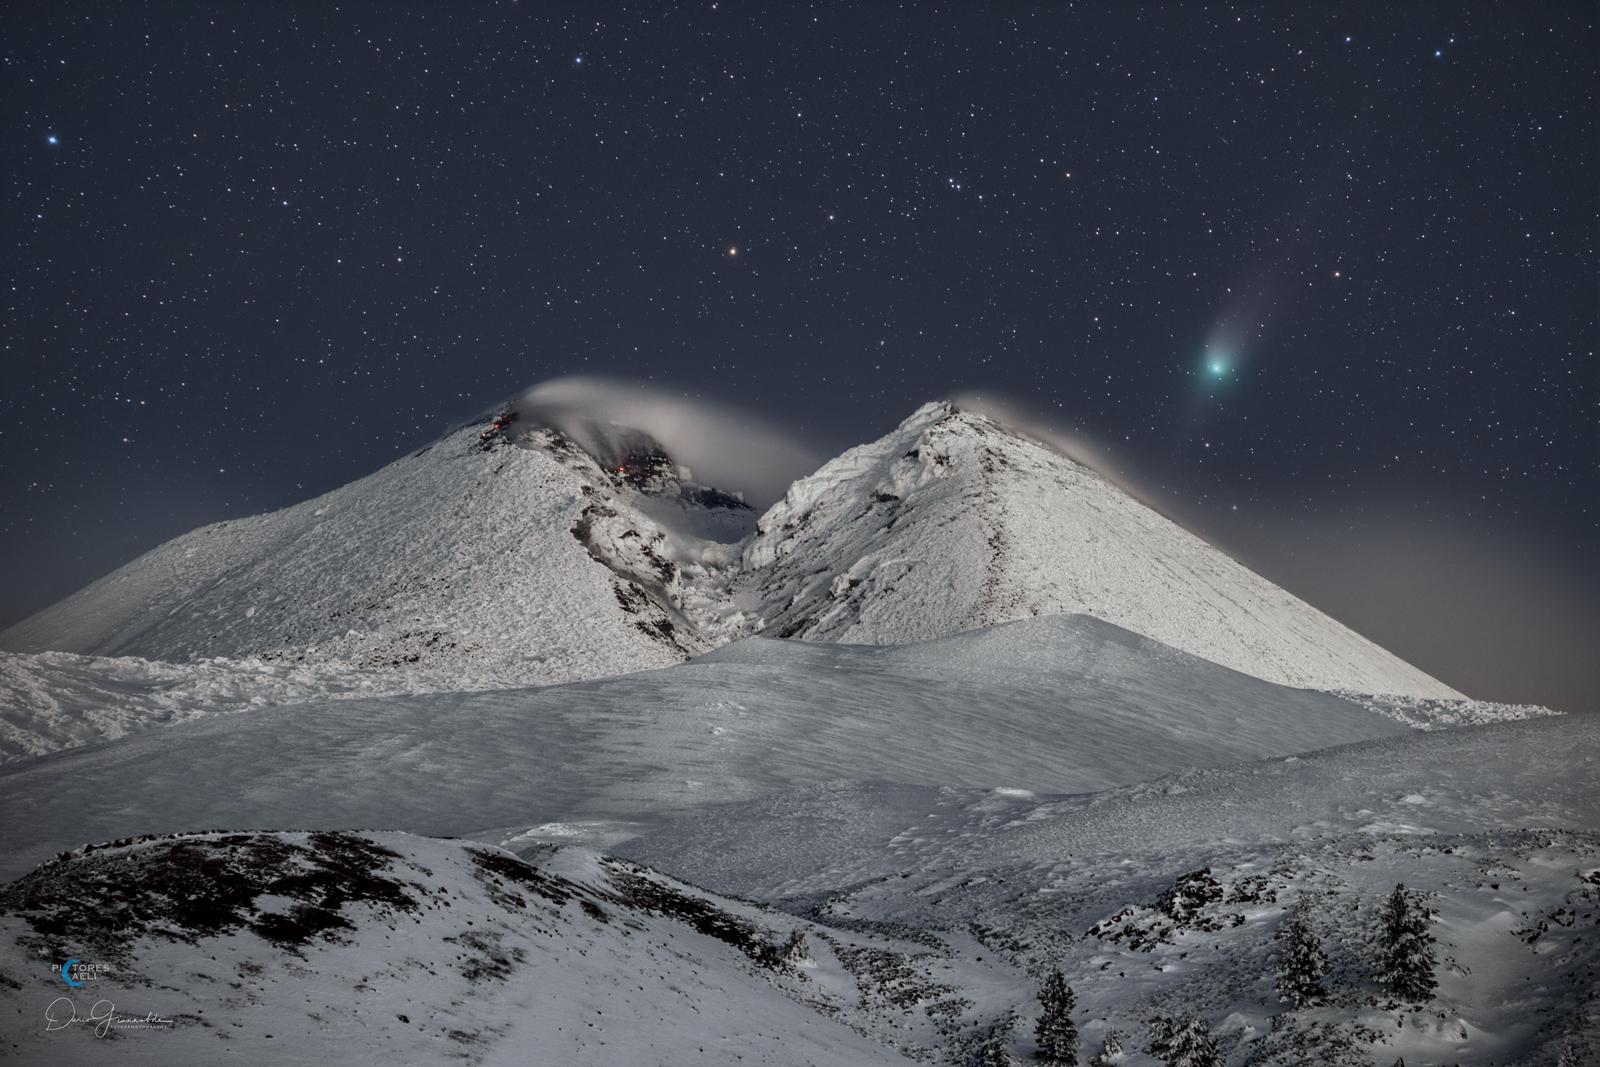 مُقدِّمة مكسوة بالثلوج يشهق فيها جبل بركانيّ بقمّتين مُغطَّى بالثلوج أيضاً أمام خلفيّة مُرصَّعة بالنجوم يظهر فيها مُذنَّب ZTF ذو الذؤابة المُخضرَّة